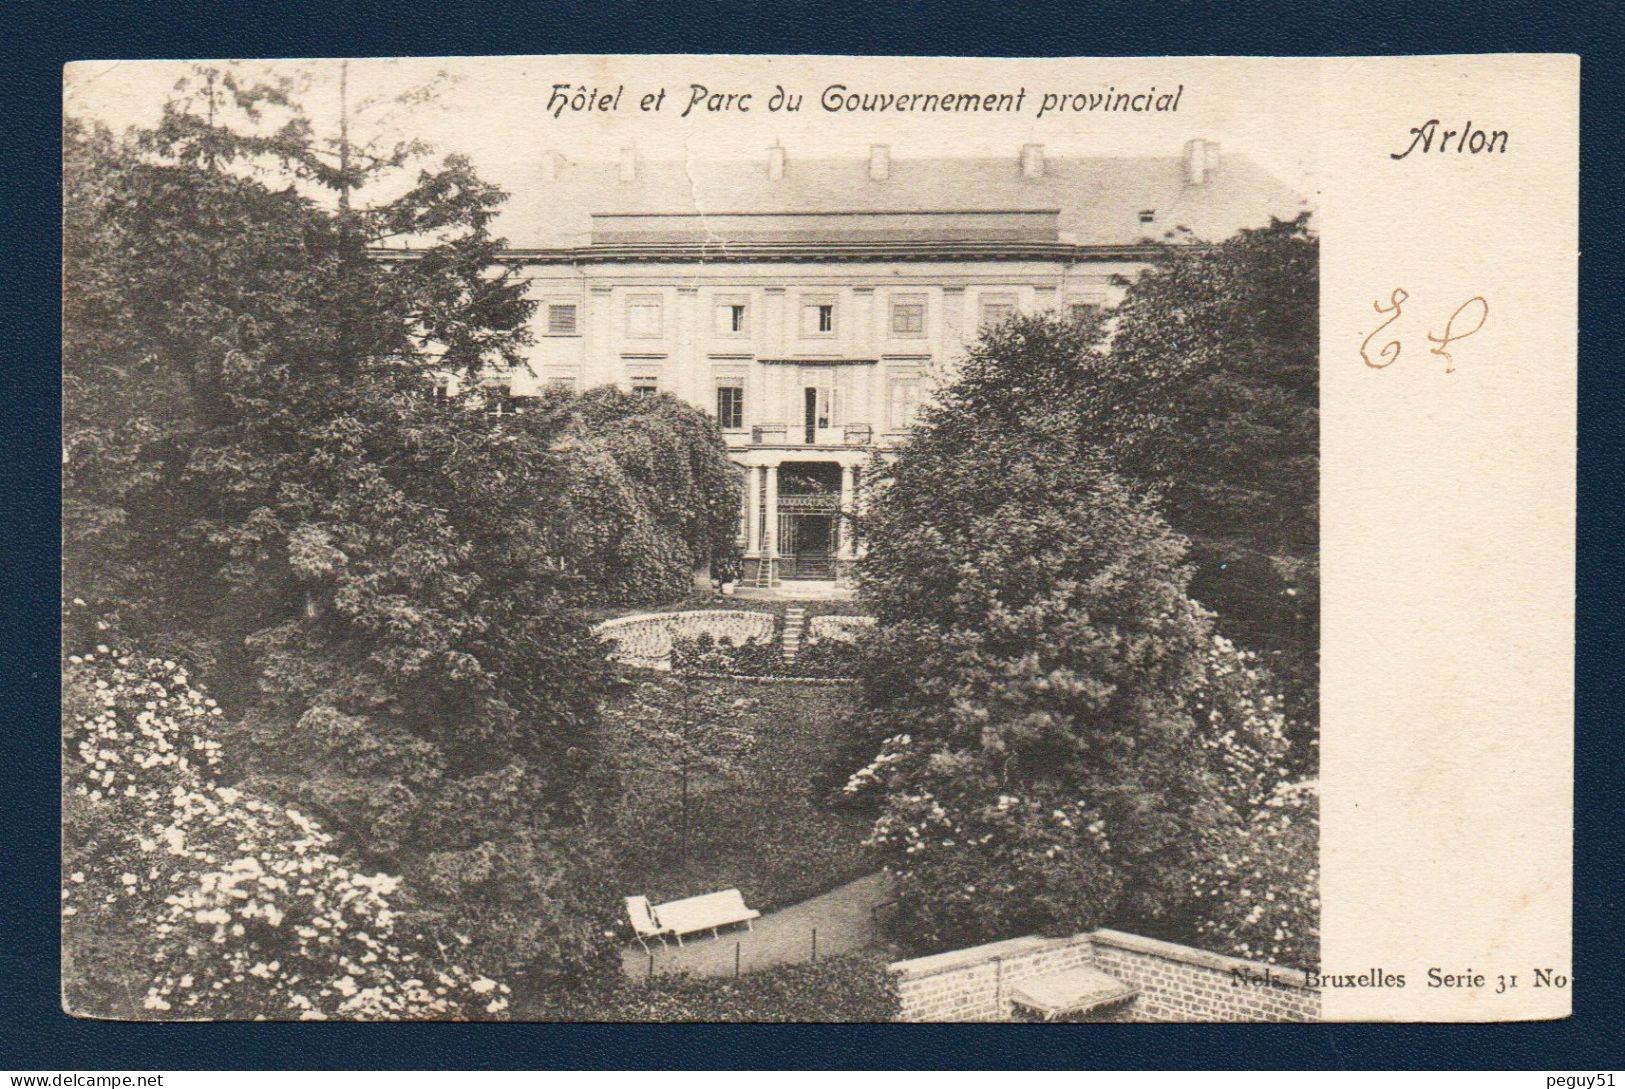 Arlon. Hôtel Et Parc Du Gouvernement Provincial. 1903 - Arlon